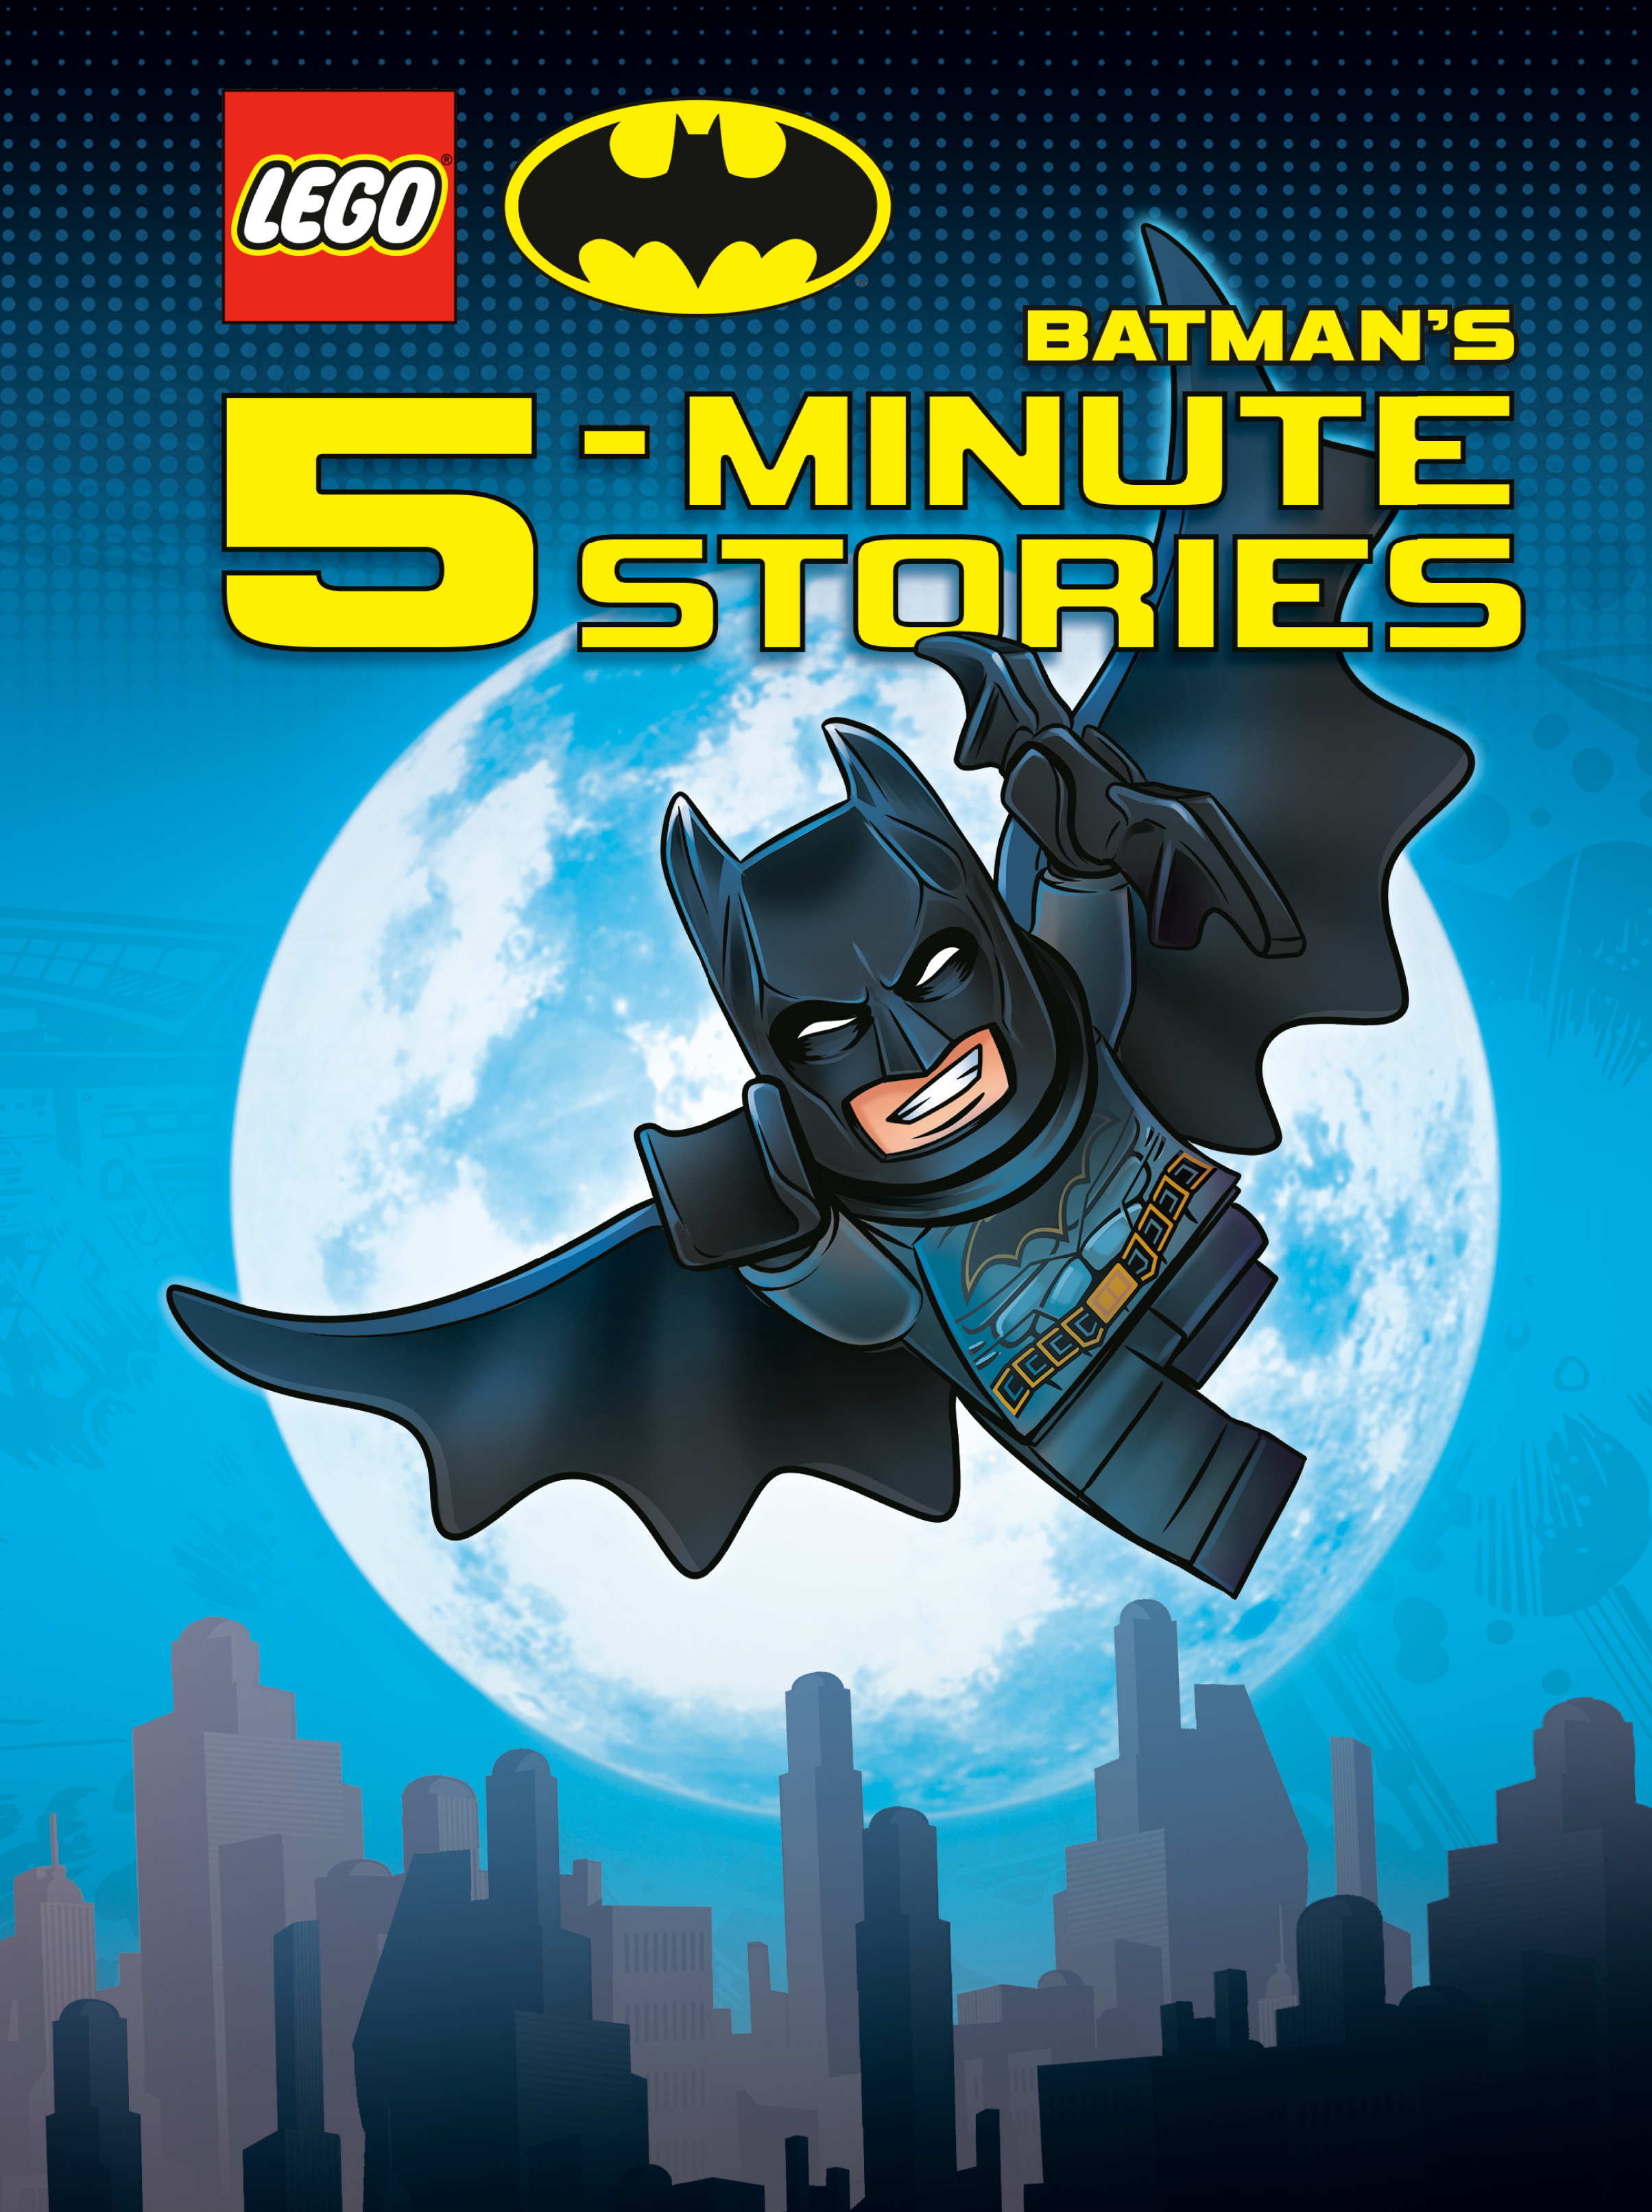 LEGO DC 76252 Batman - Batcave: first images - BrickTastic